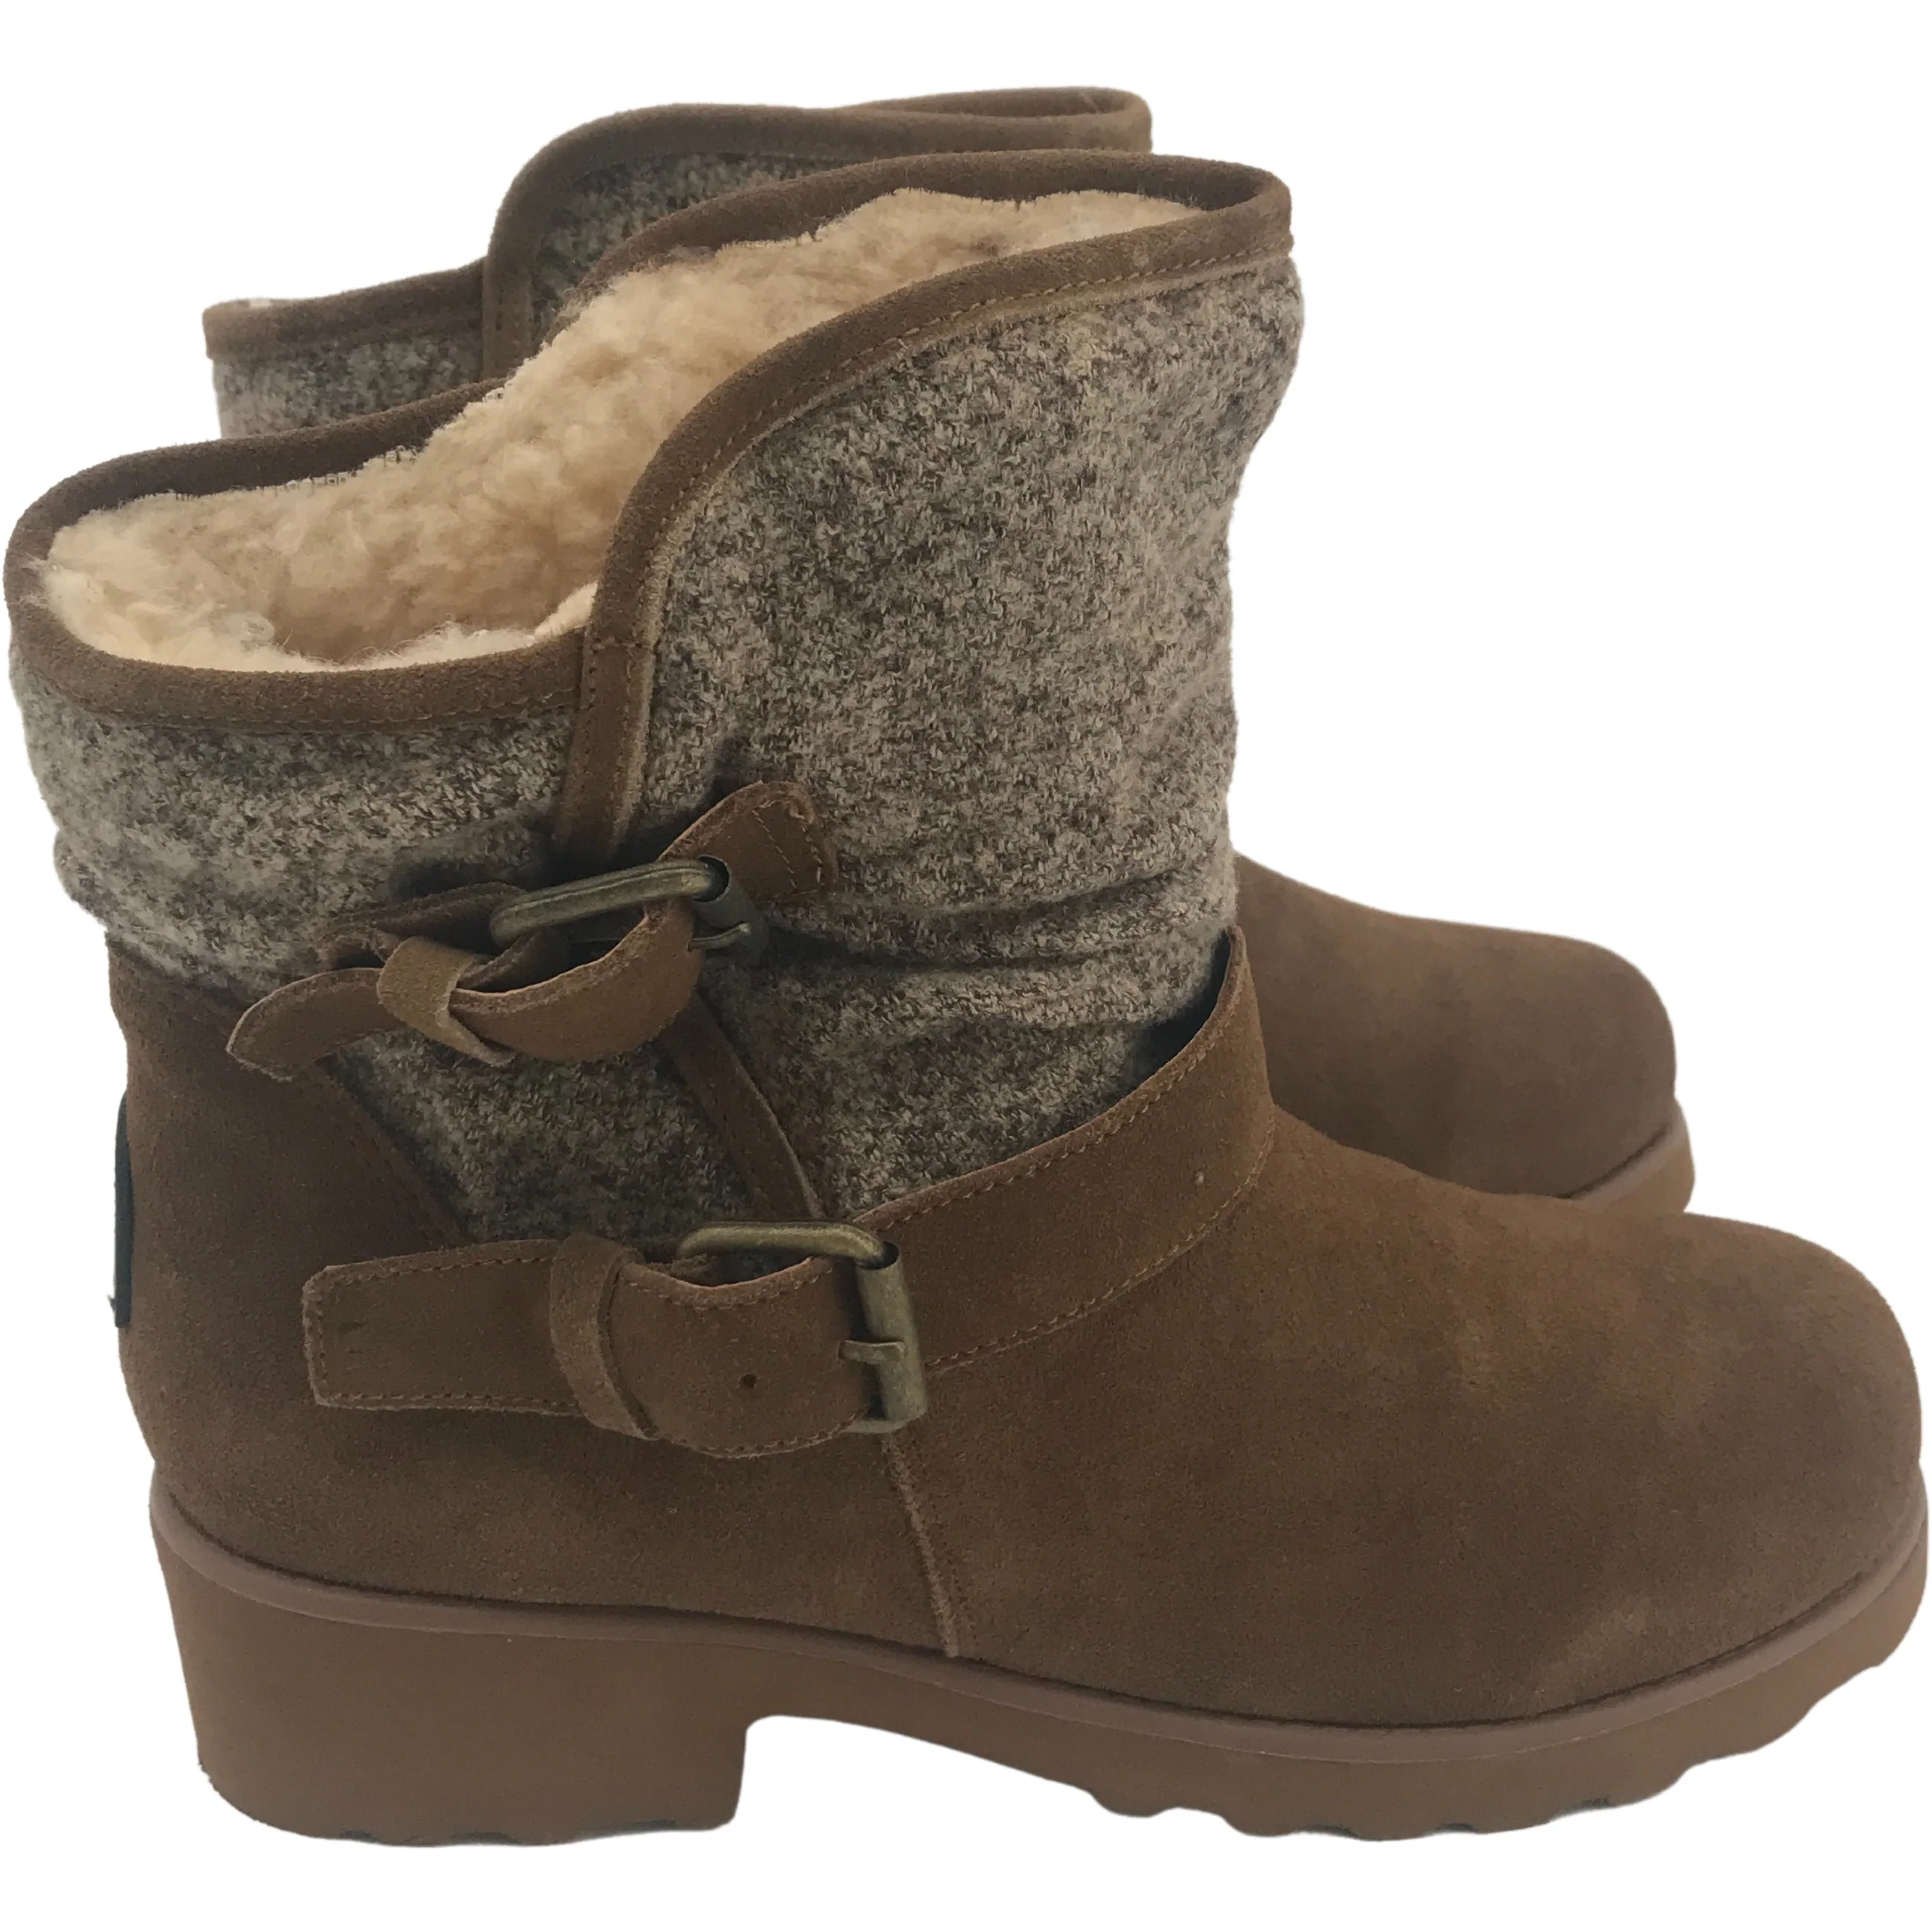 BearPaw Women's Winter Boots / Ankle Boots / BearPaw Avery / Tan / Size 9